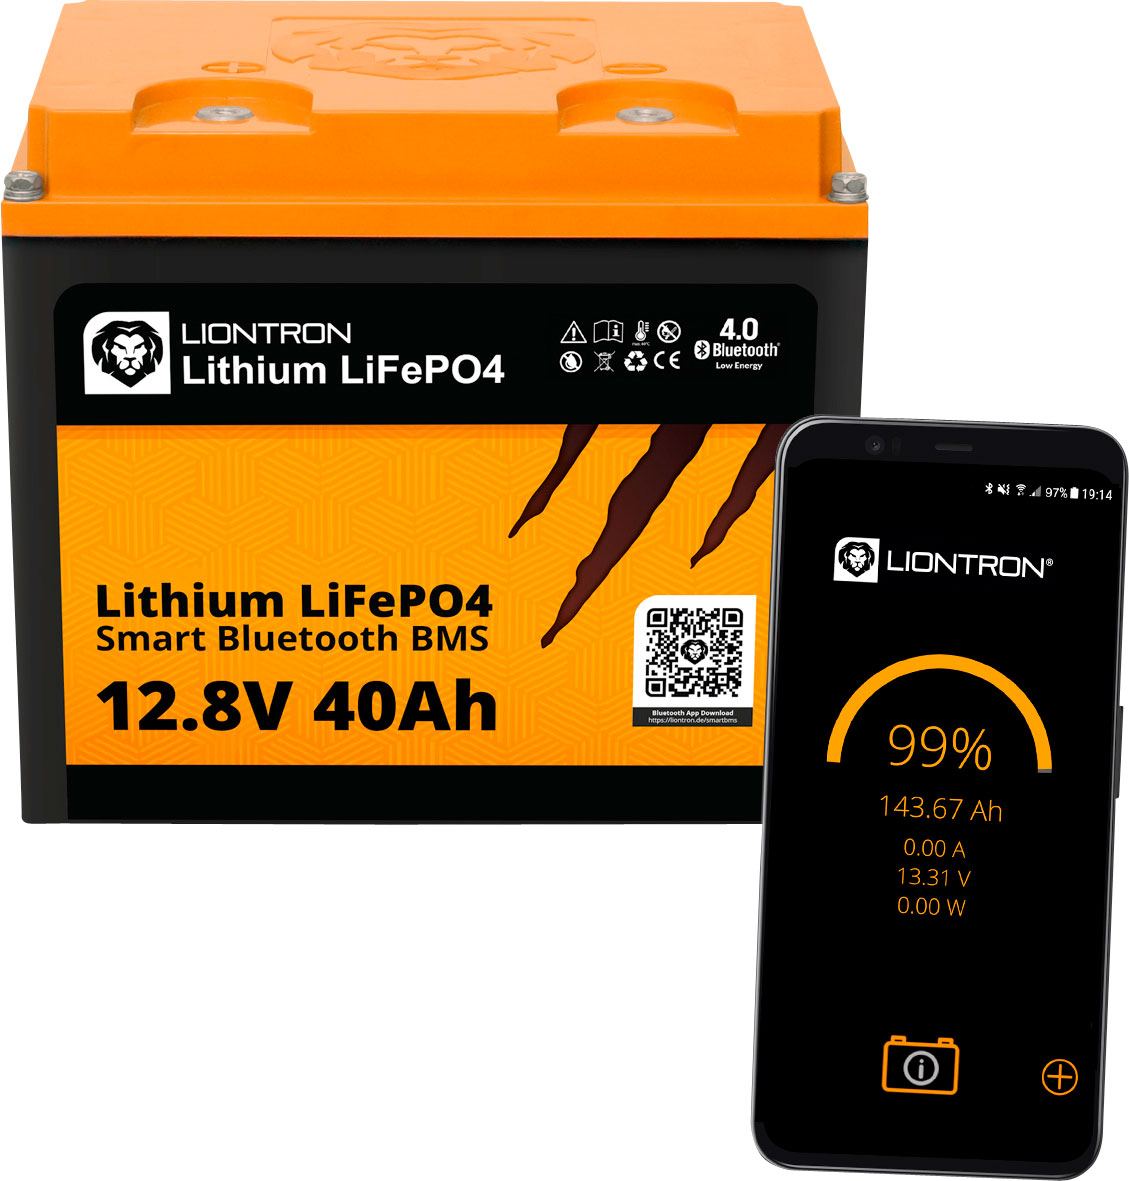 Liontron LiFePO4 Smart Bluetooth BMS Lithium-Batterie 12,8 V / 40 Ah